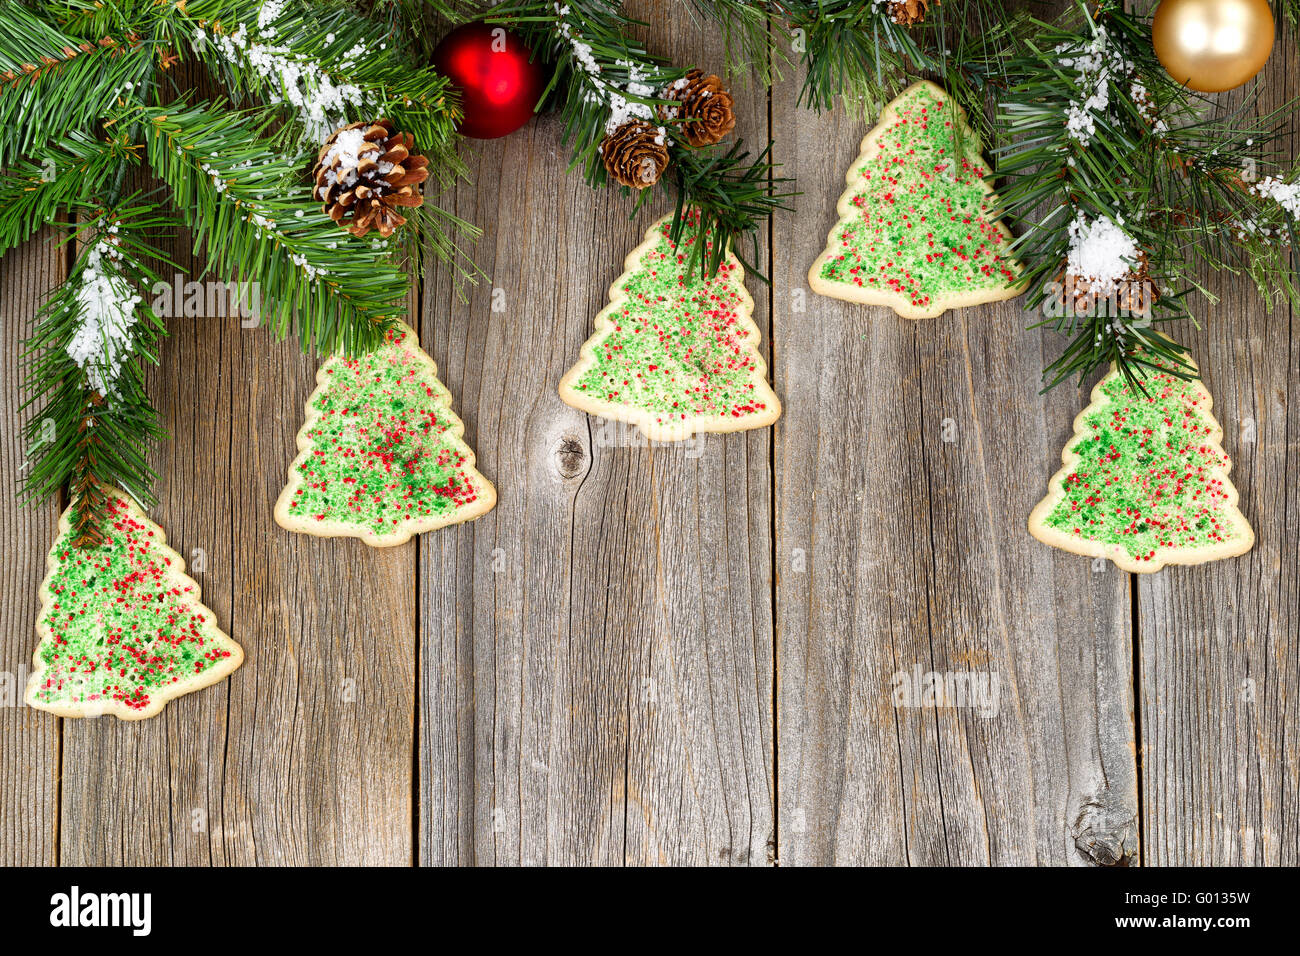 Les cookies en forme d'arbres de Noël et des ornements Banque D'Images